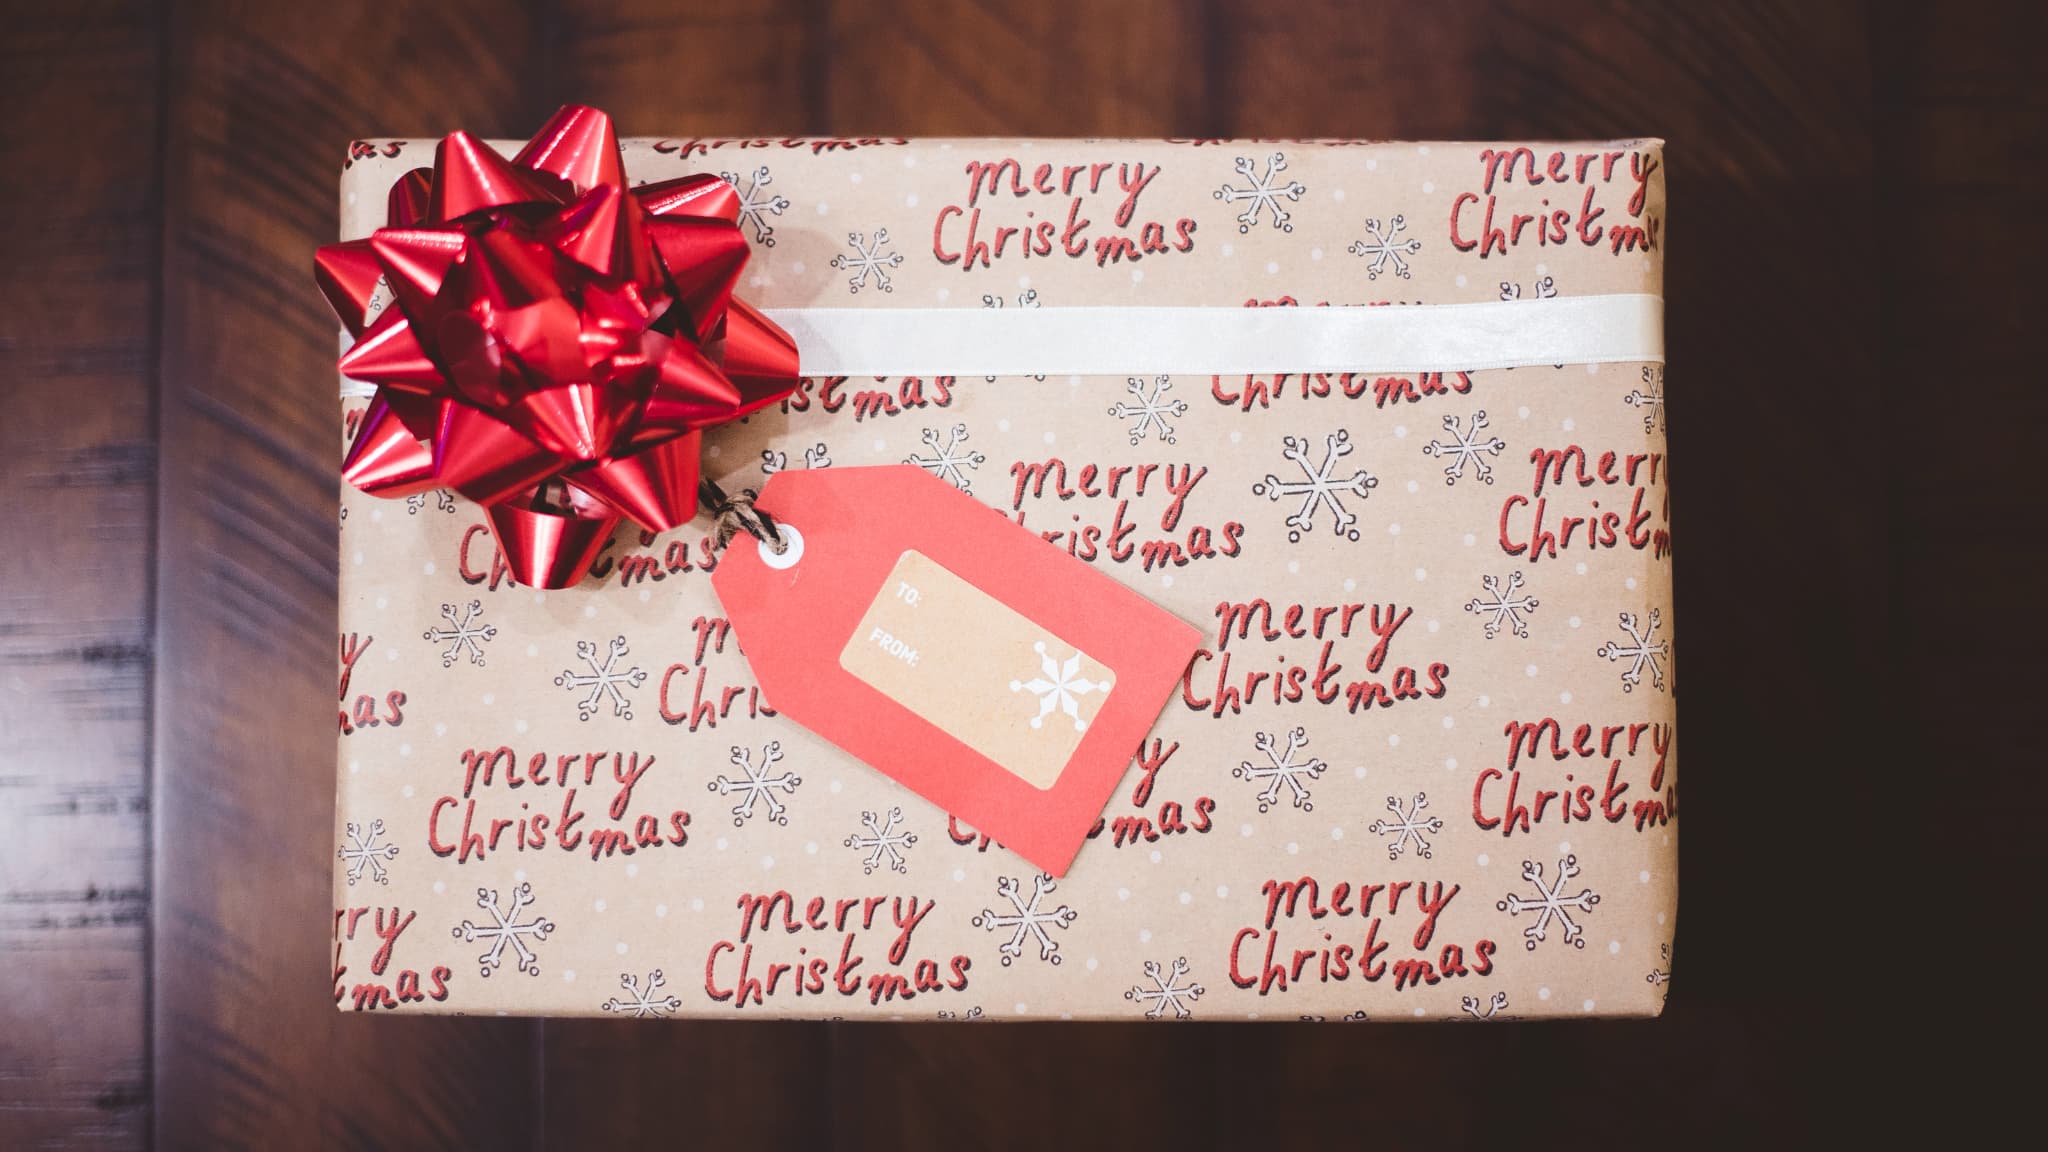 Noël 2023 : quel cadeau offrir à un ado ou un pré-ado ?